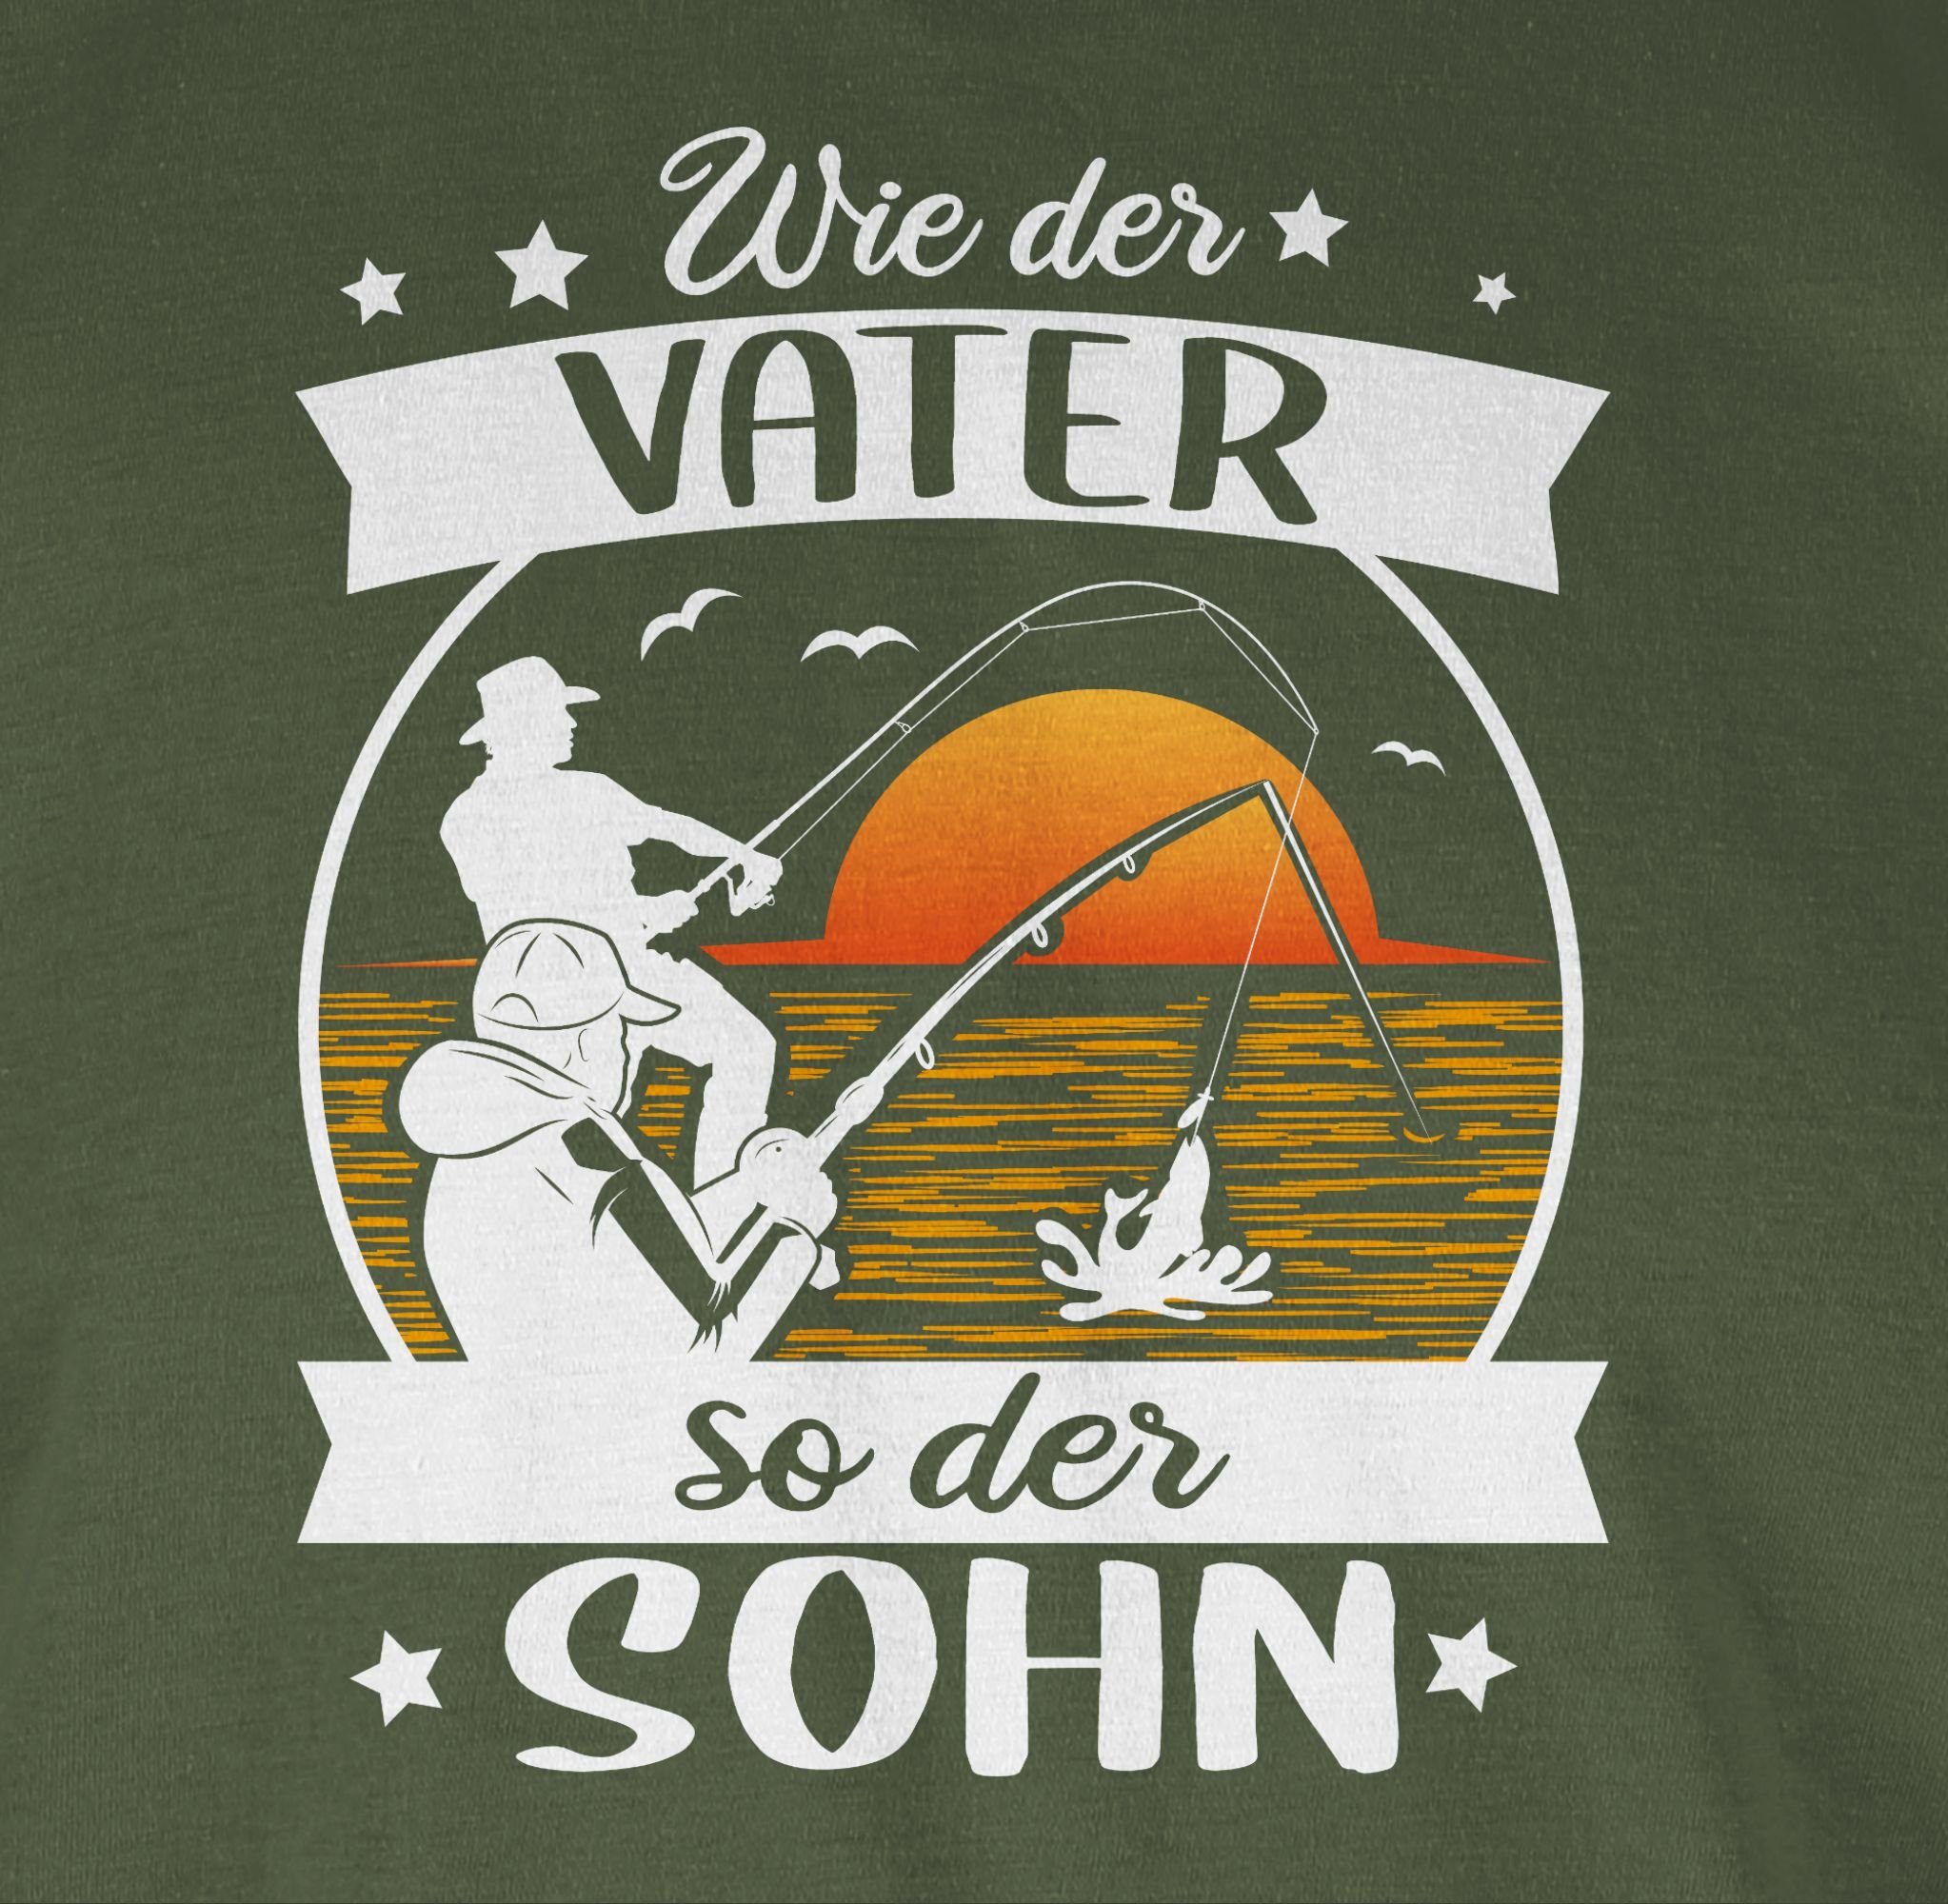 Shirtracer T-Shirt Wie Vater der Army Angler Angeln - Grün weiß/orange der so - 2 Geschenke Sohn